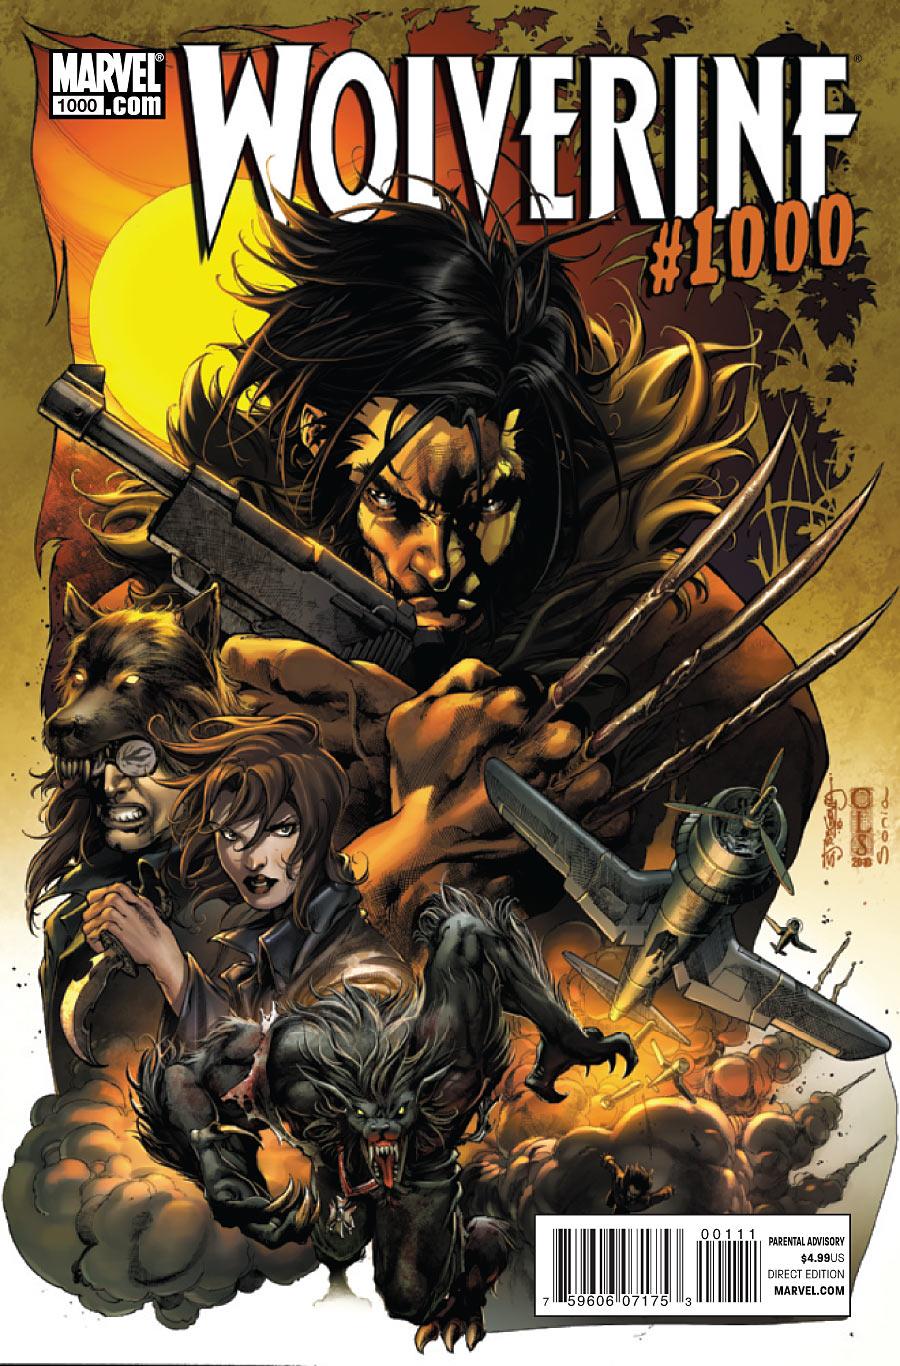 Wolverine Vol. 2 #1000